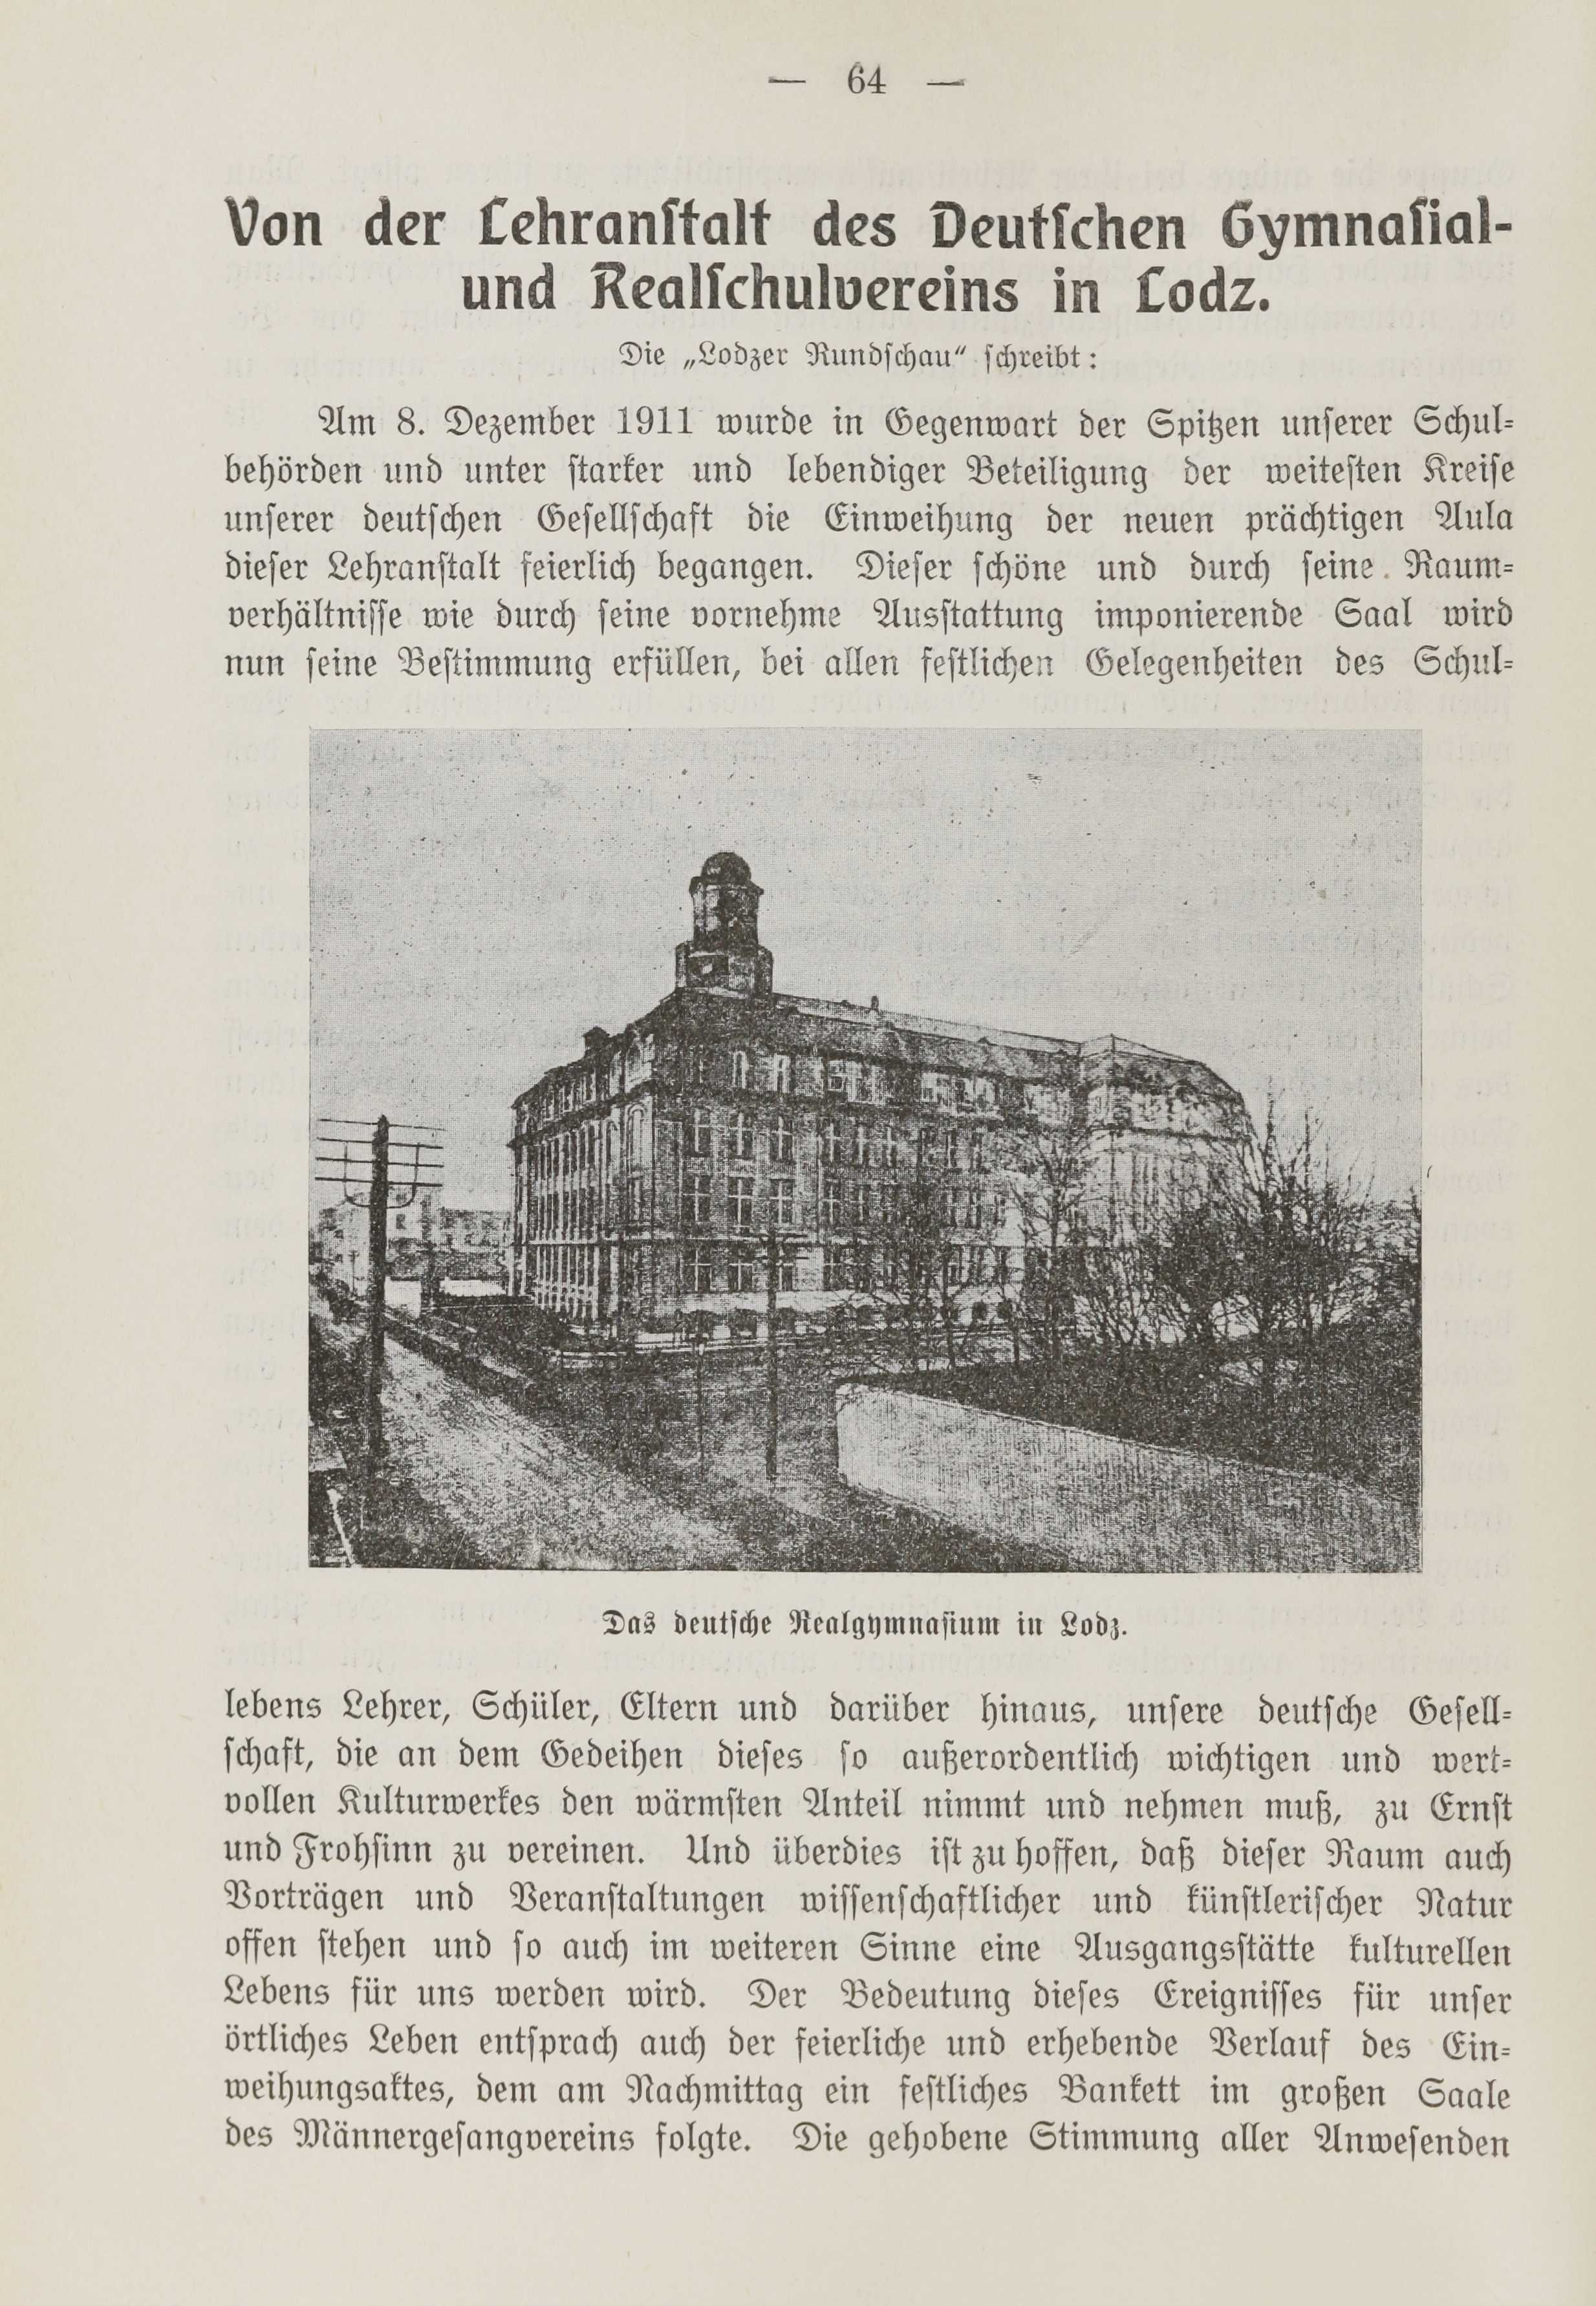 Deutsche Monatsschrift für Russland [1] (1912) | 71. (64) Main body of text